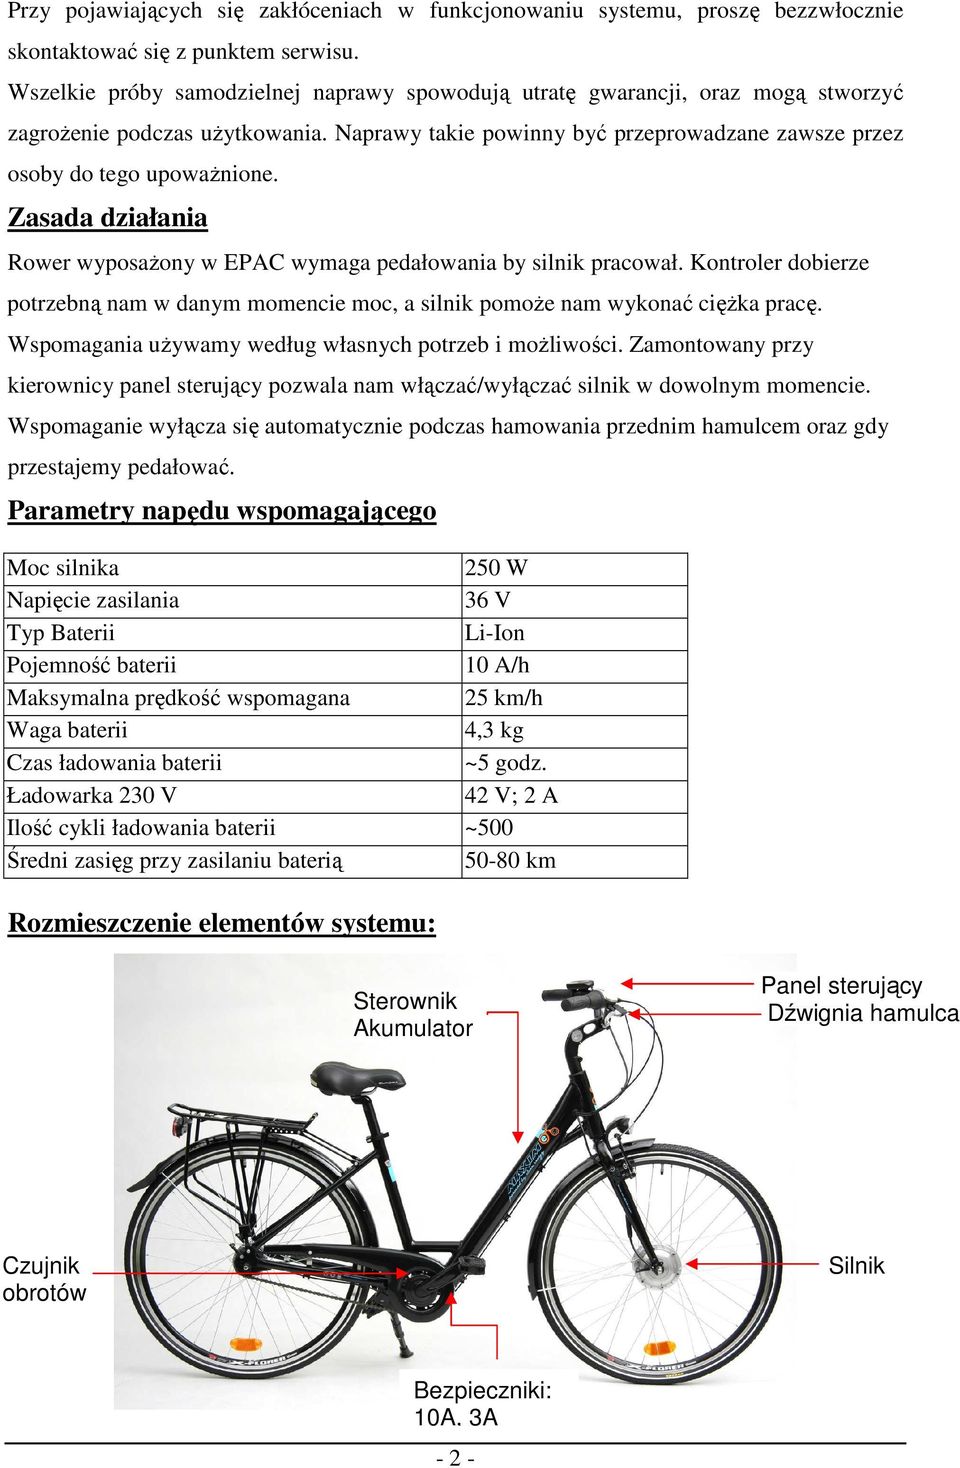 Instrukcja obsługi roweru wspomaganego elektrycznie - PDF Darmowe pobieranie